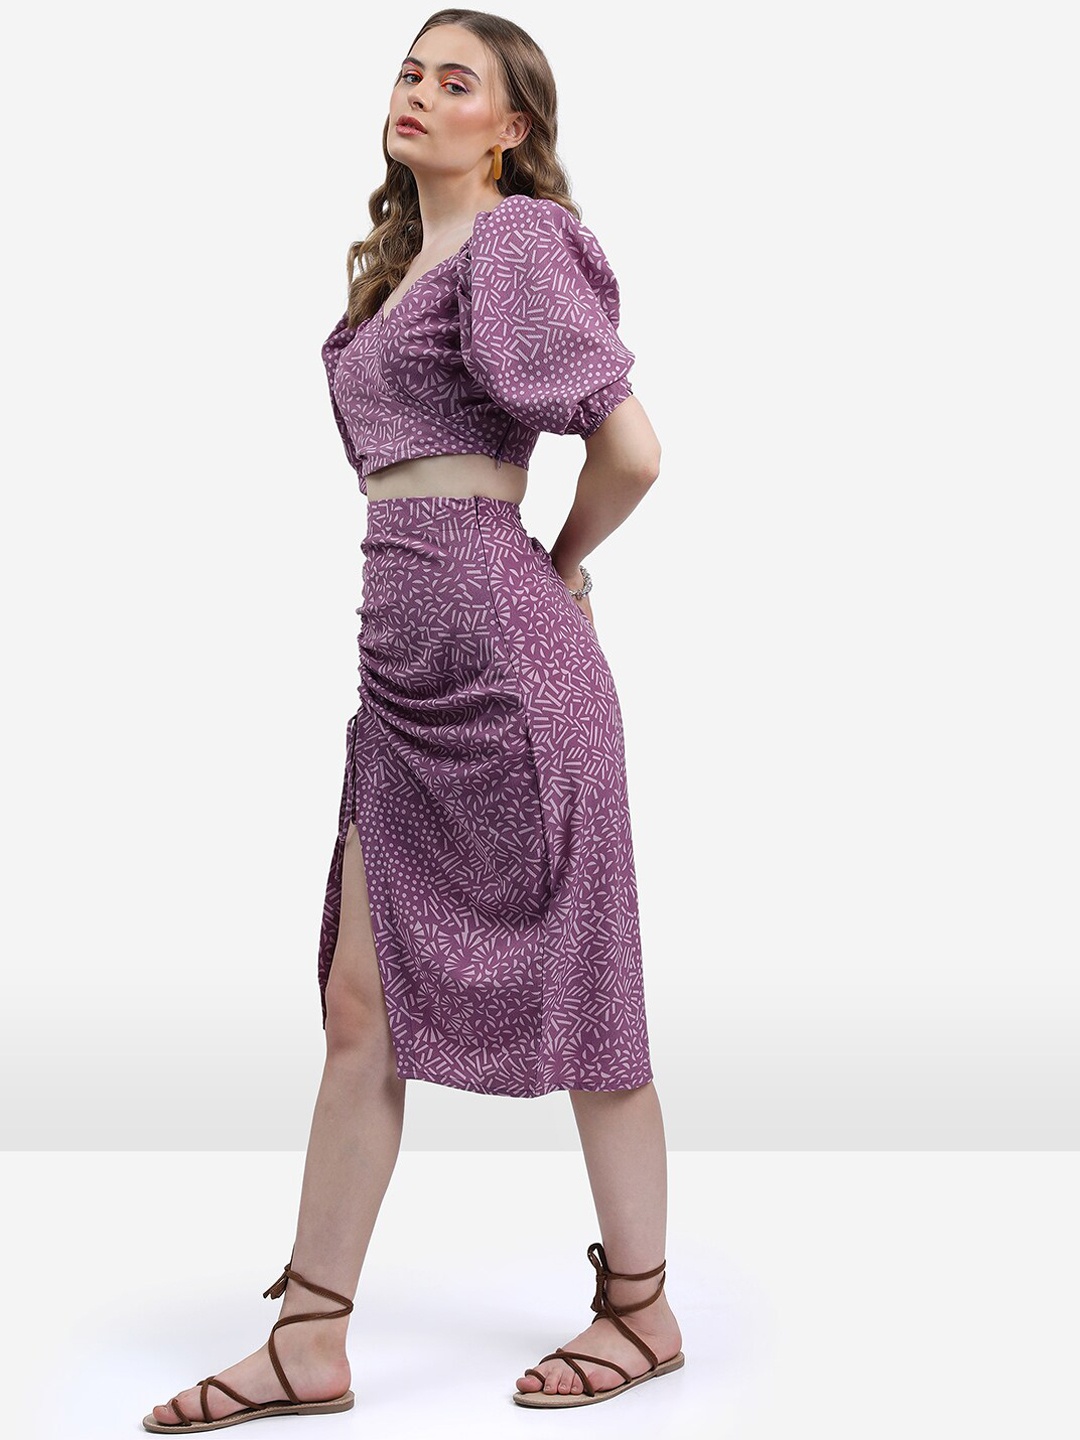 

KETCH Geometric Printed Crop Top & Skirt, Lavender